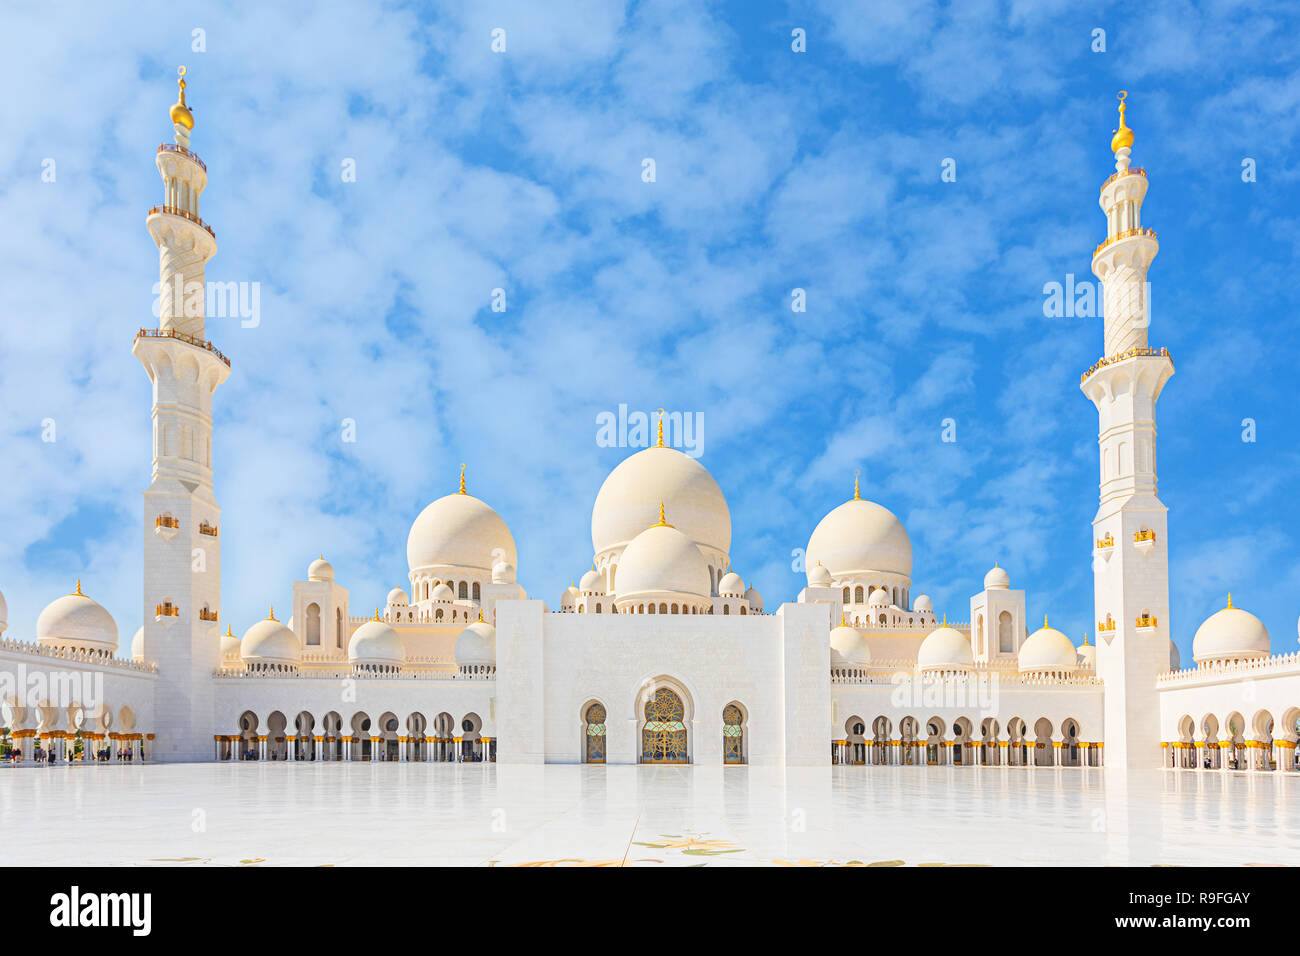 Schöne Sheikh Zayed Moschee - Abu Dhabi, Vereinigte Arabische Emirate white Grand Mosque Courtyard Stockfoto